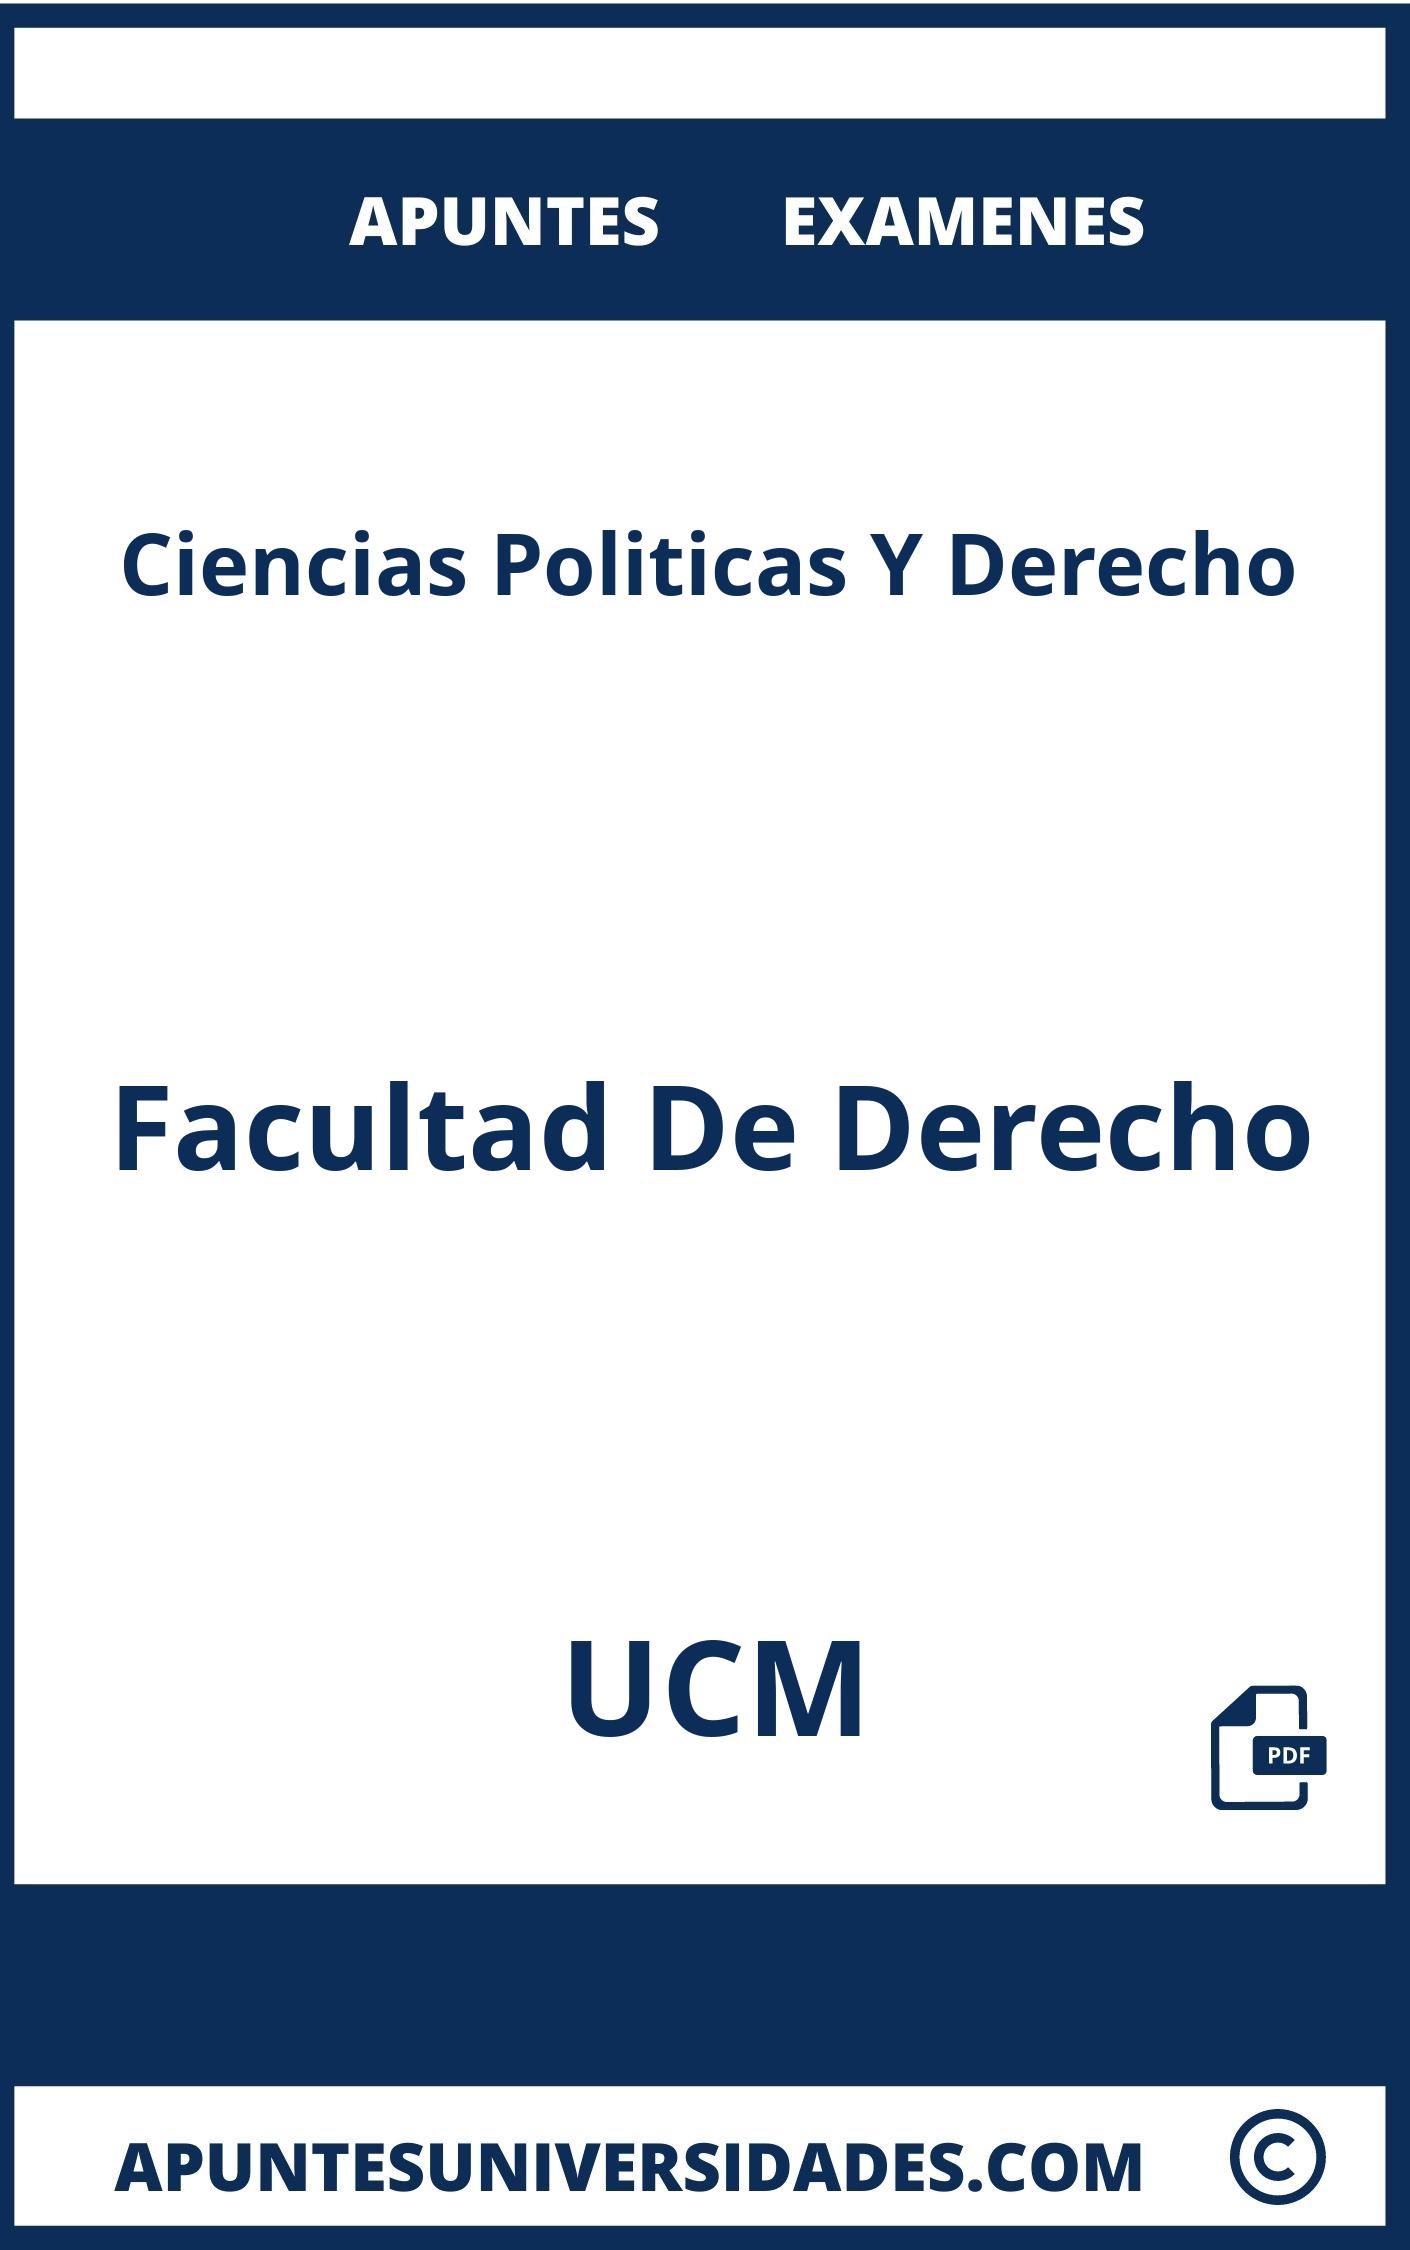 Apuntes y Examenes Ciencias Politicas Y Derecho UCM